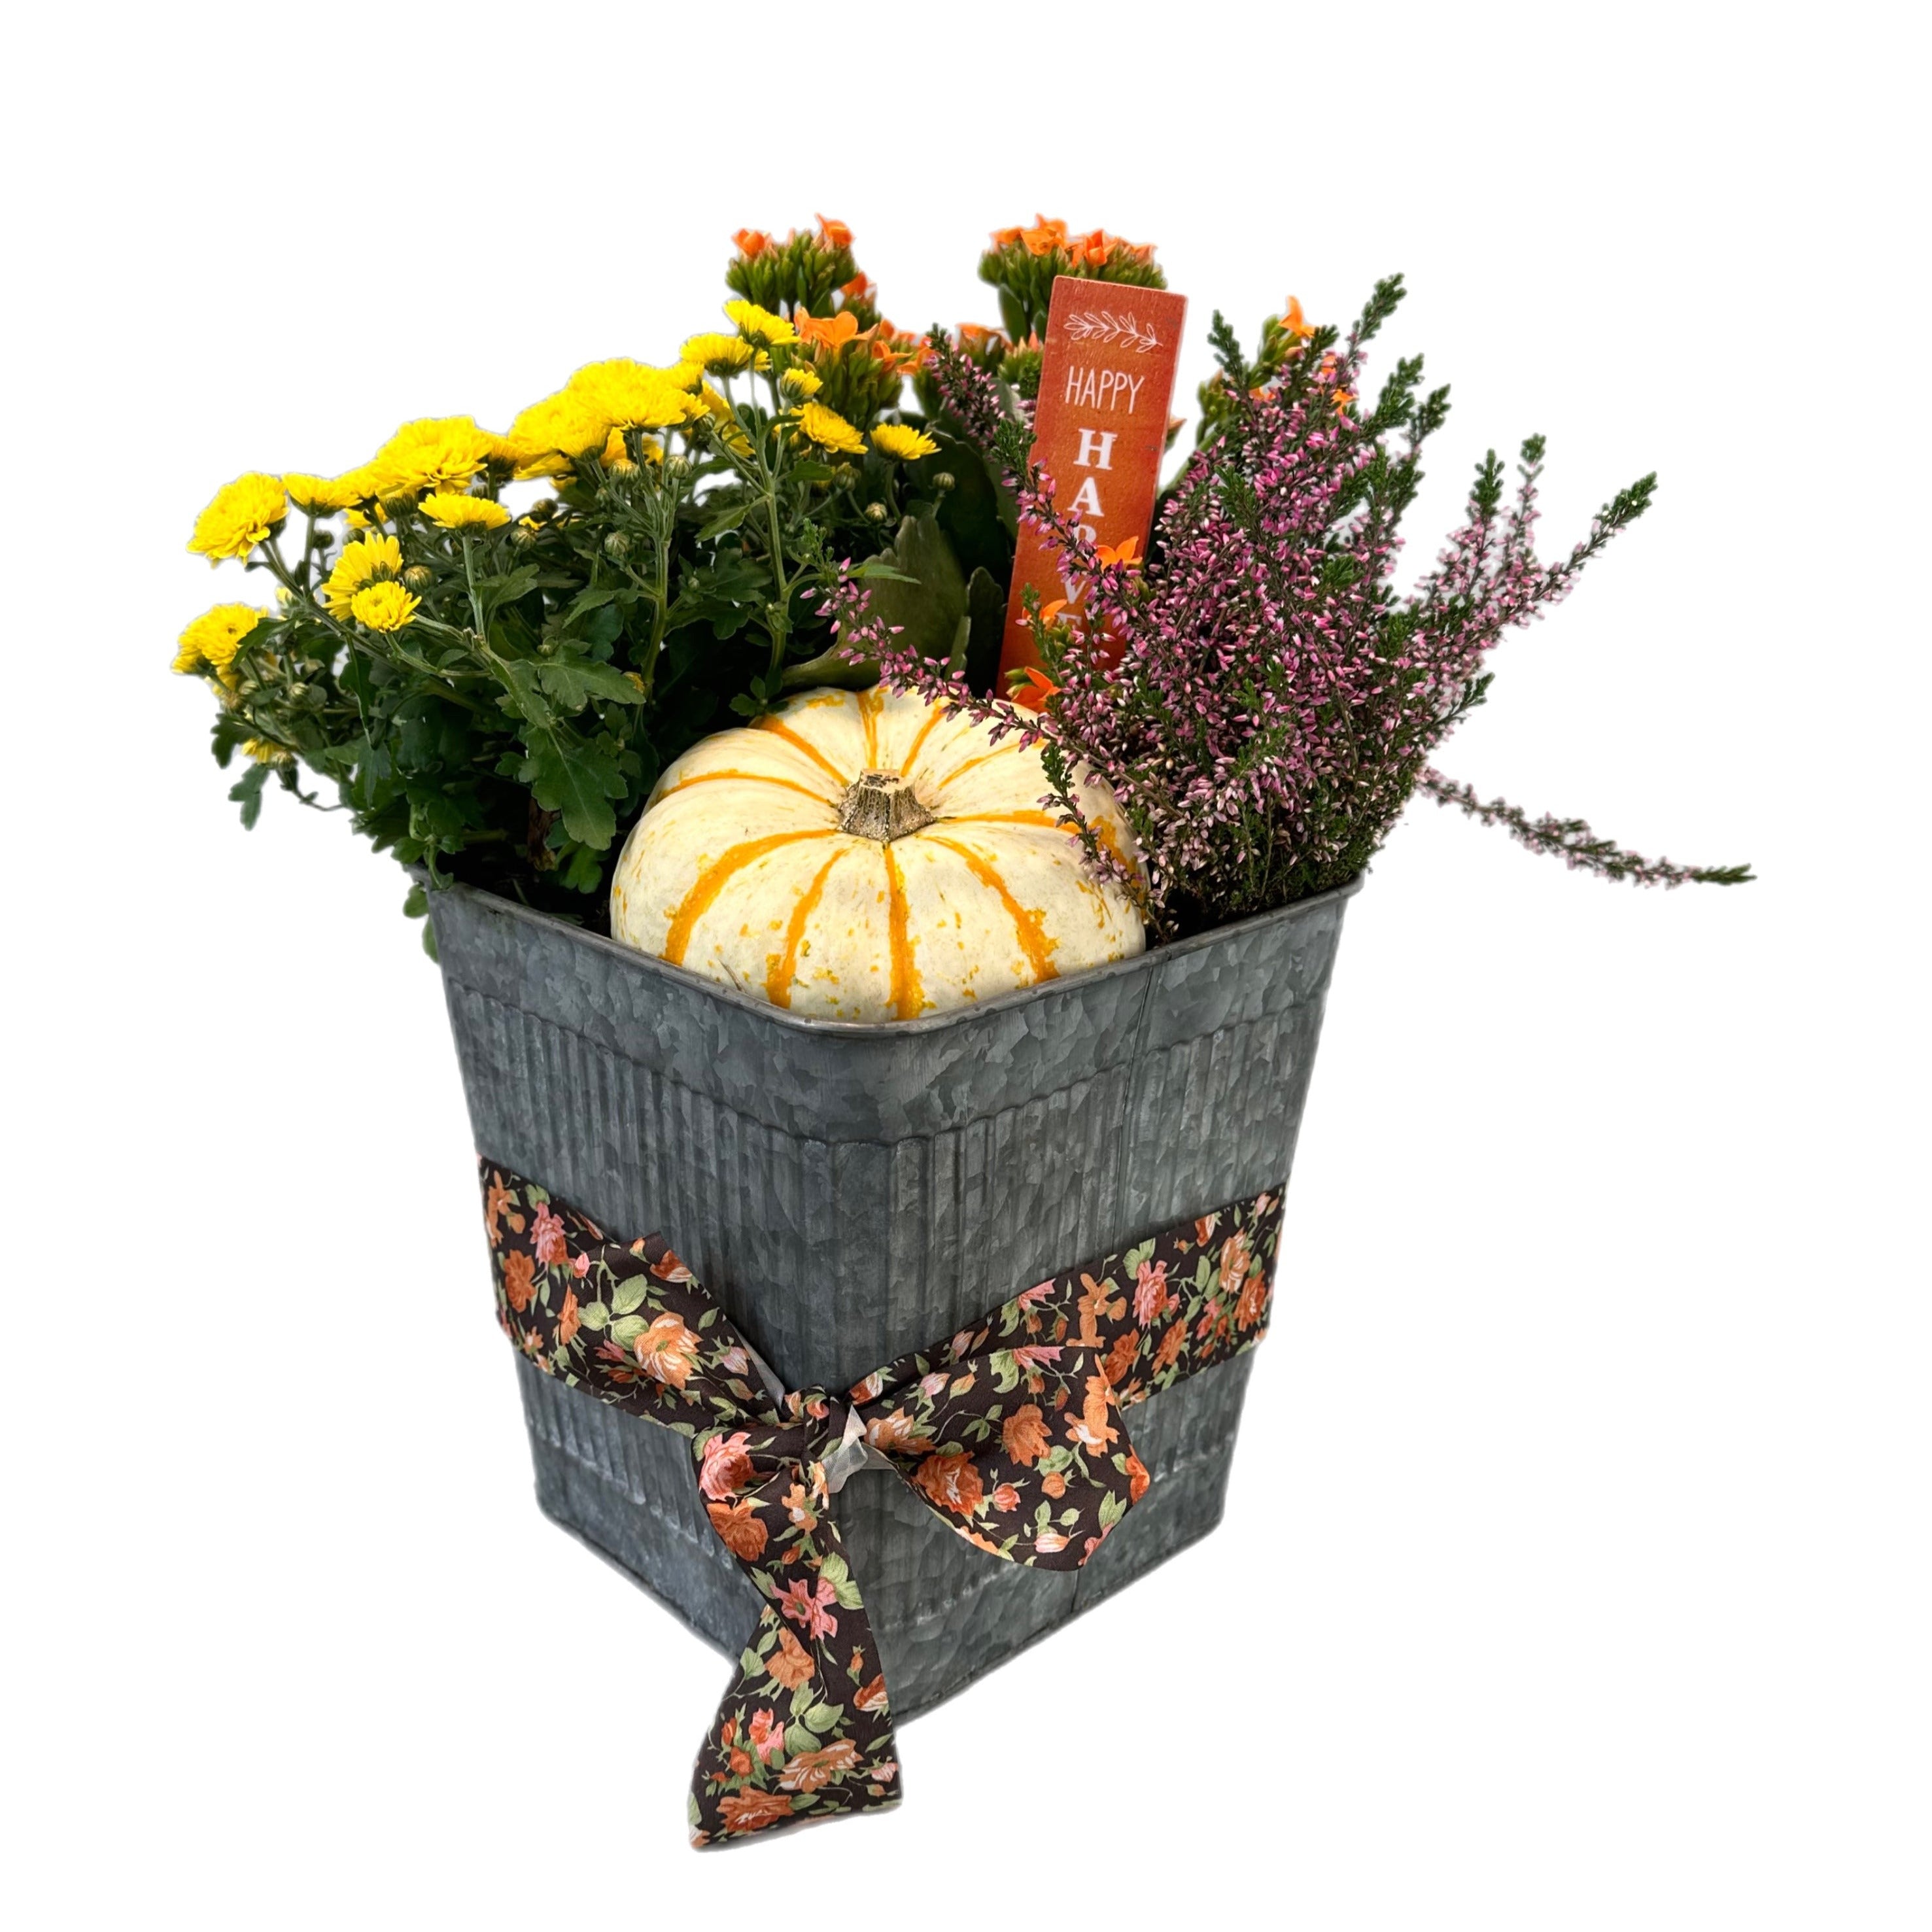 Happy Harvest - Tooka Florist